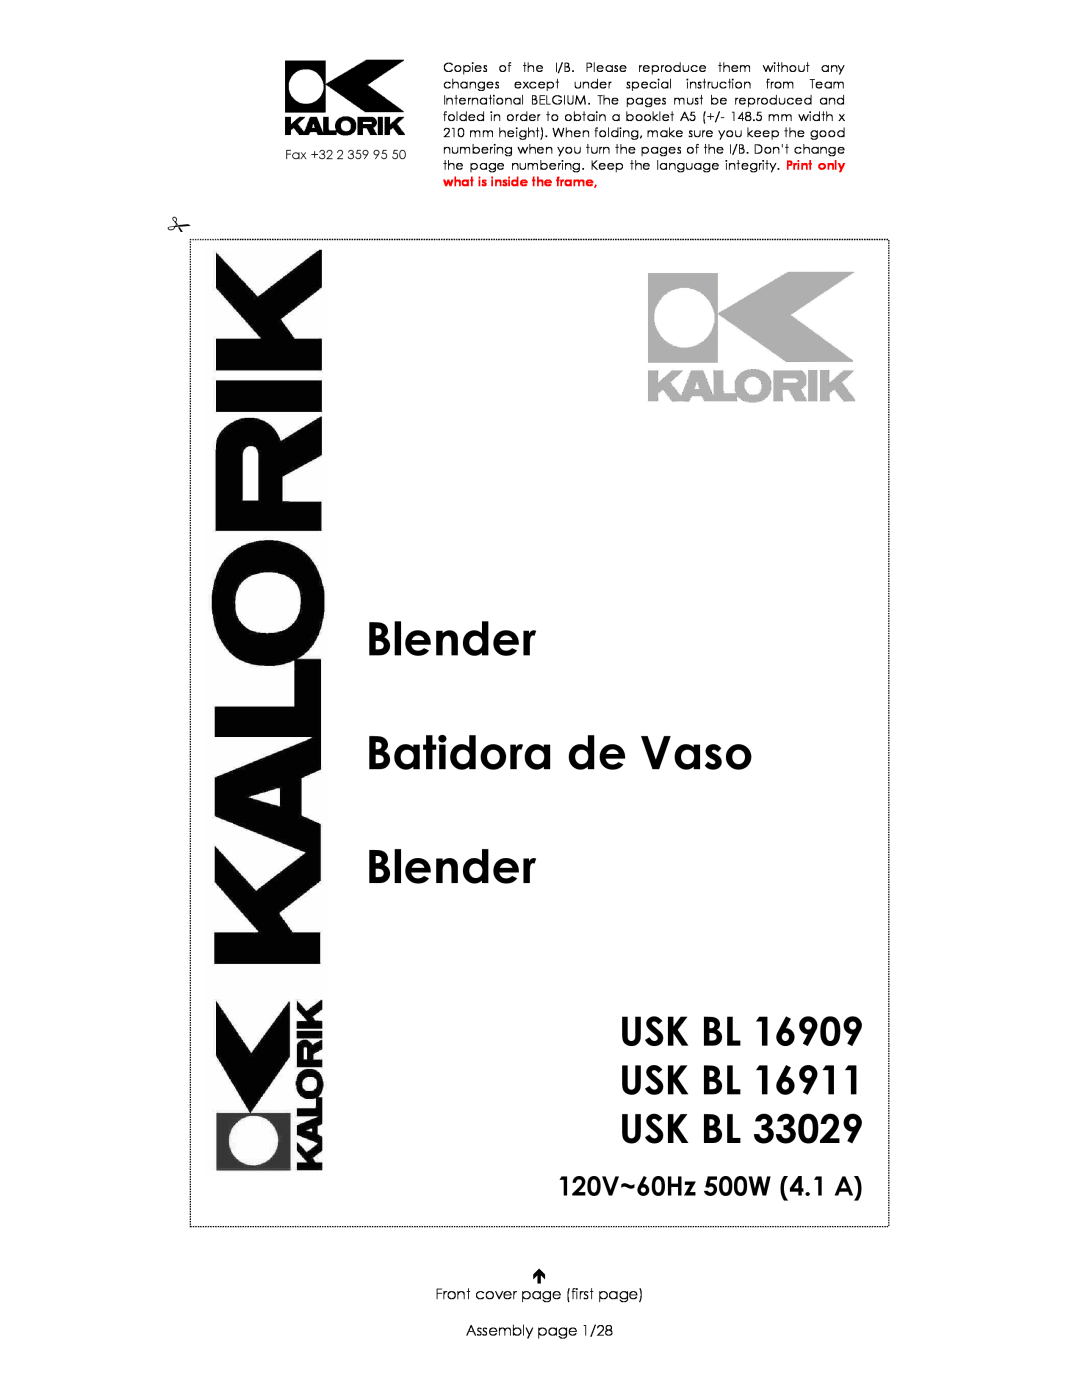 Kalorik USK BL 16911, usk bl 16909 manual Usk Bl Usk Bl Usk Bl, 120V~60Hz 500W, Blender Batidora de Vaso Blender 